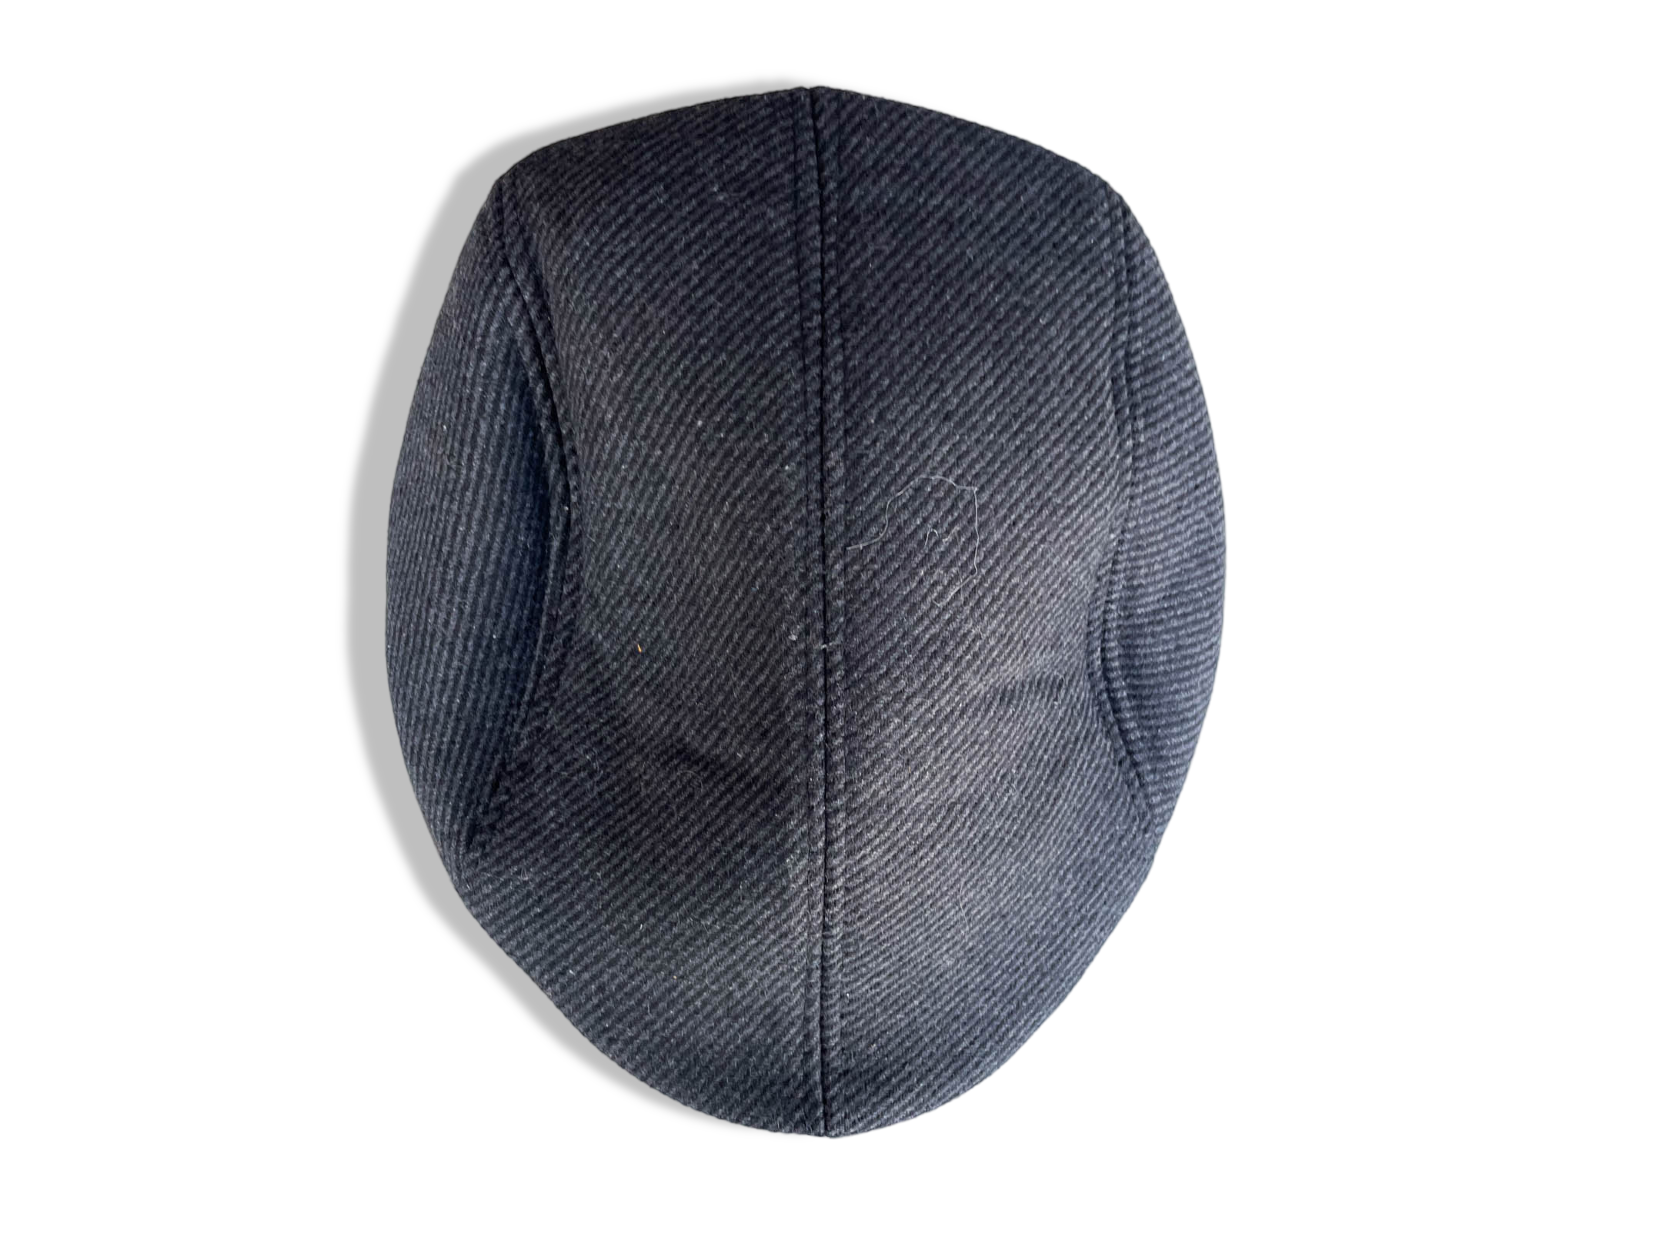 Vintage grey men's autumn winter newsboy flat cap| SKU 4341